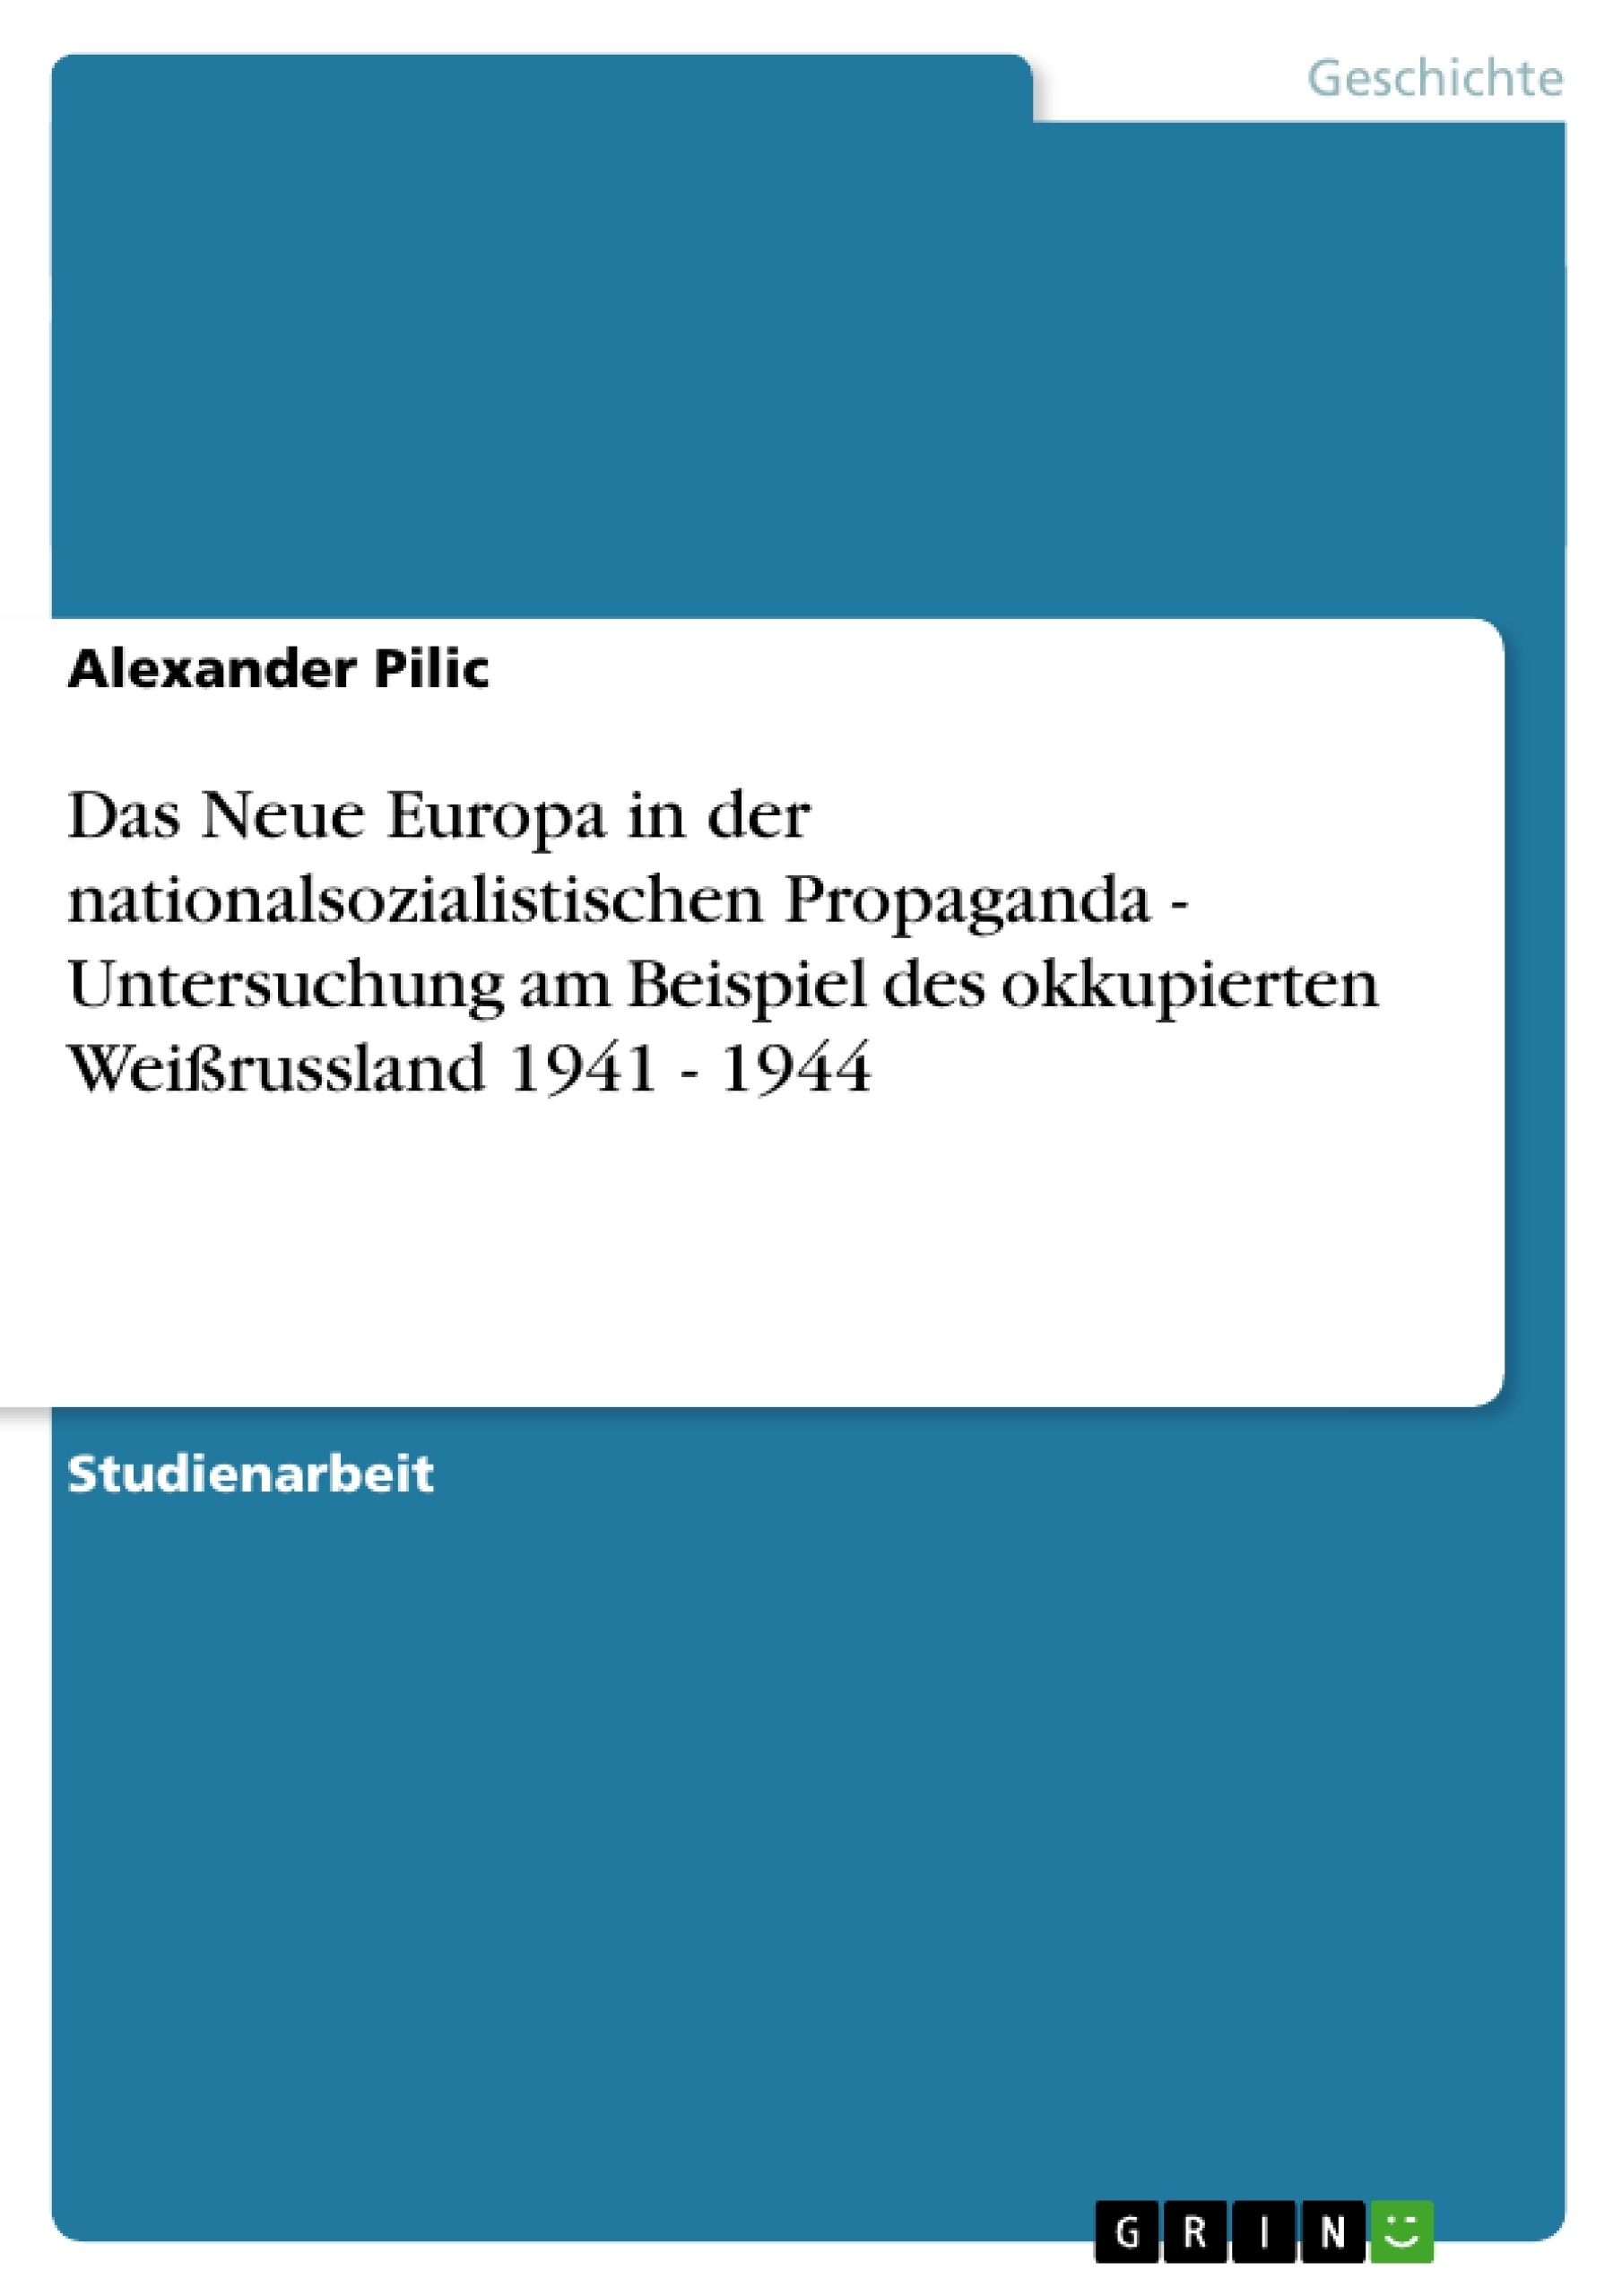 Título: Das Neue Europa in der nationalsozialistischen Propaganda - Untersuchung am Beispiel des okkupierten Weißrussland 1941 - 1944